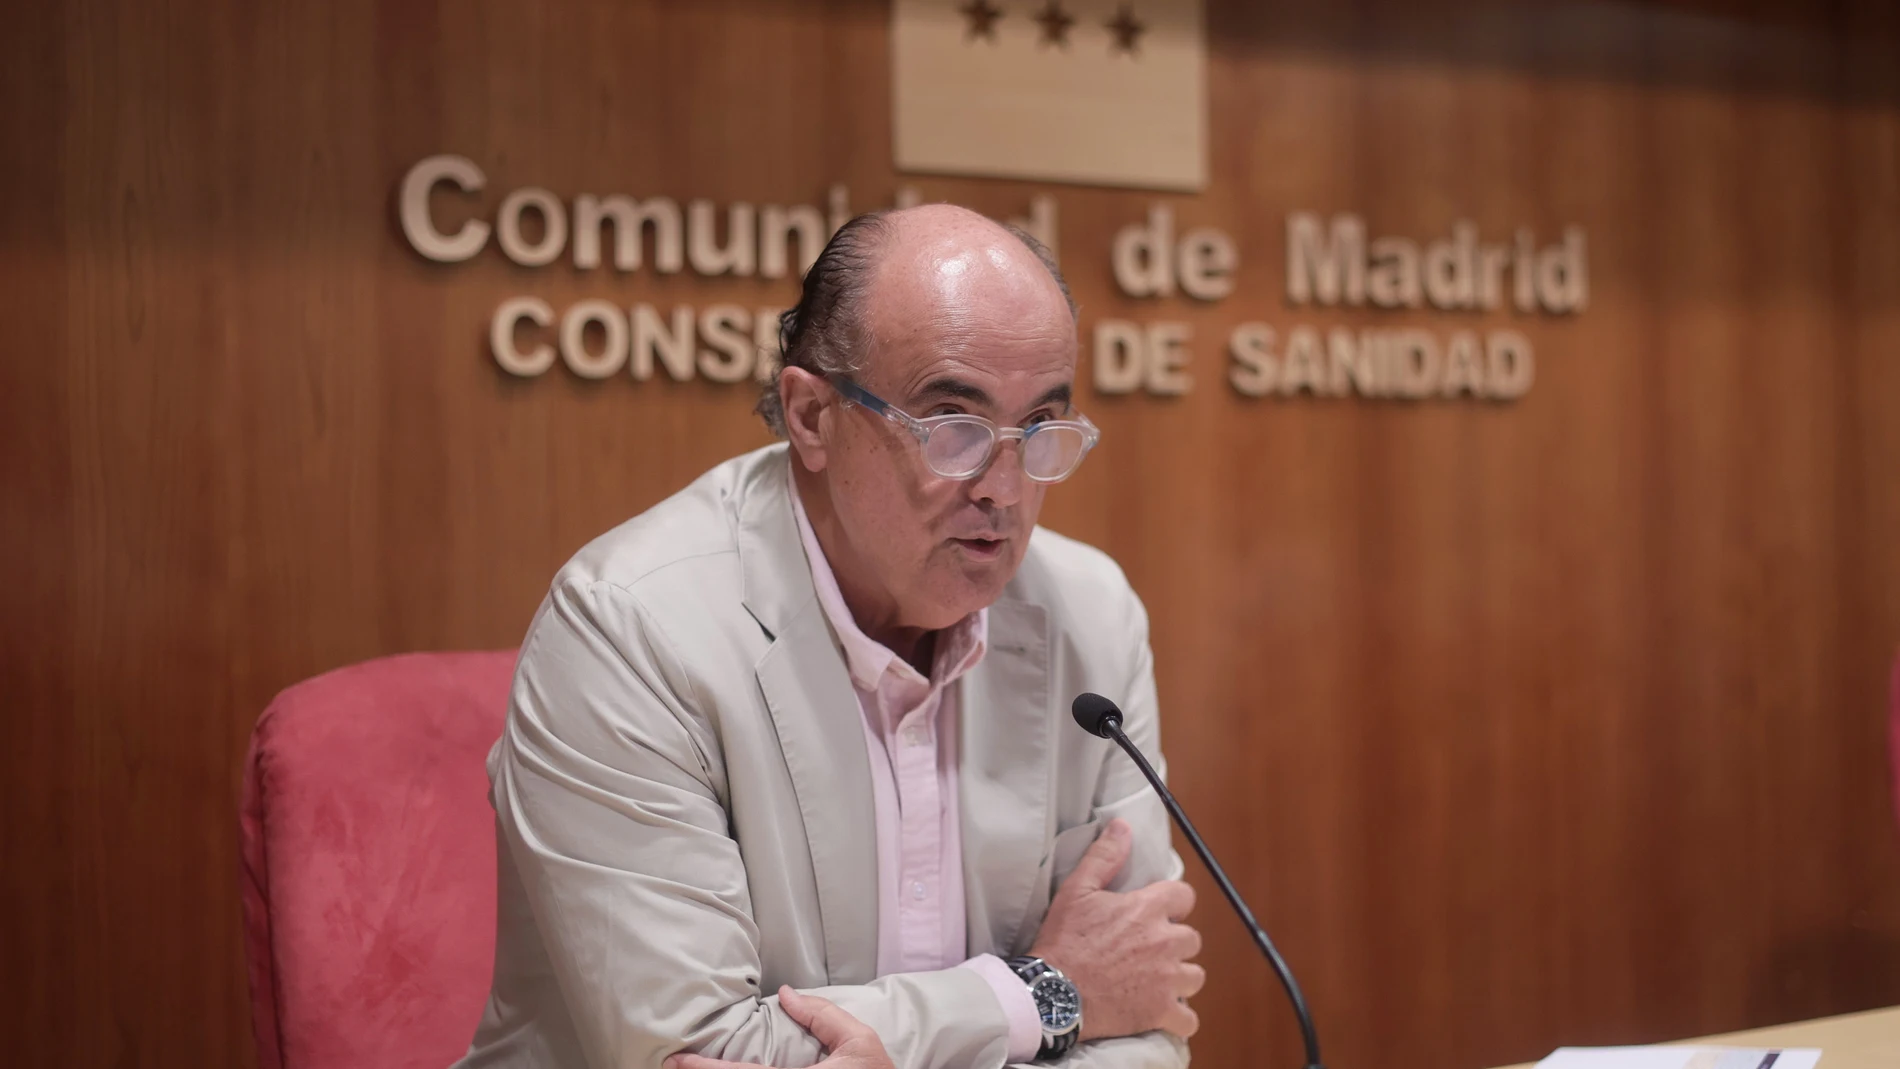 El viceconsejero de Salud Pública y Plan COVID-19 de la Comunidad de Madrid, Antonio Zapatero